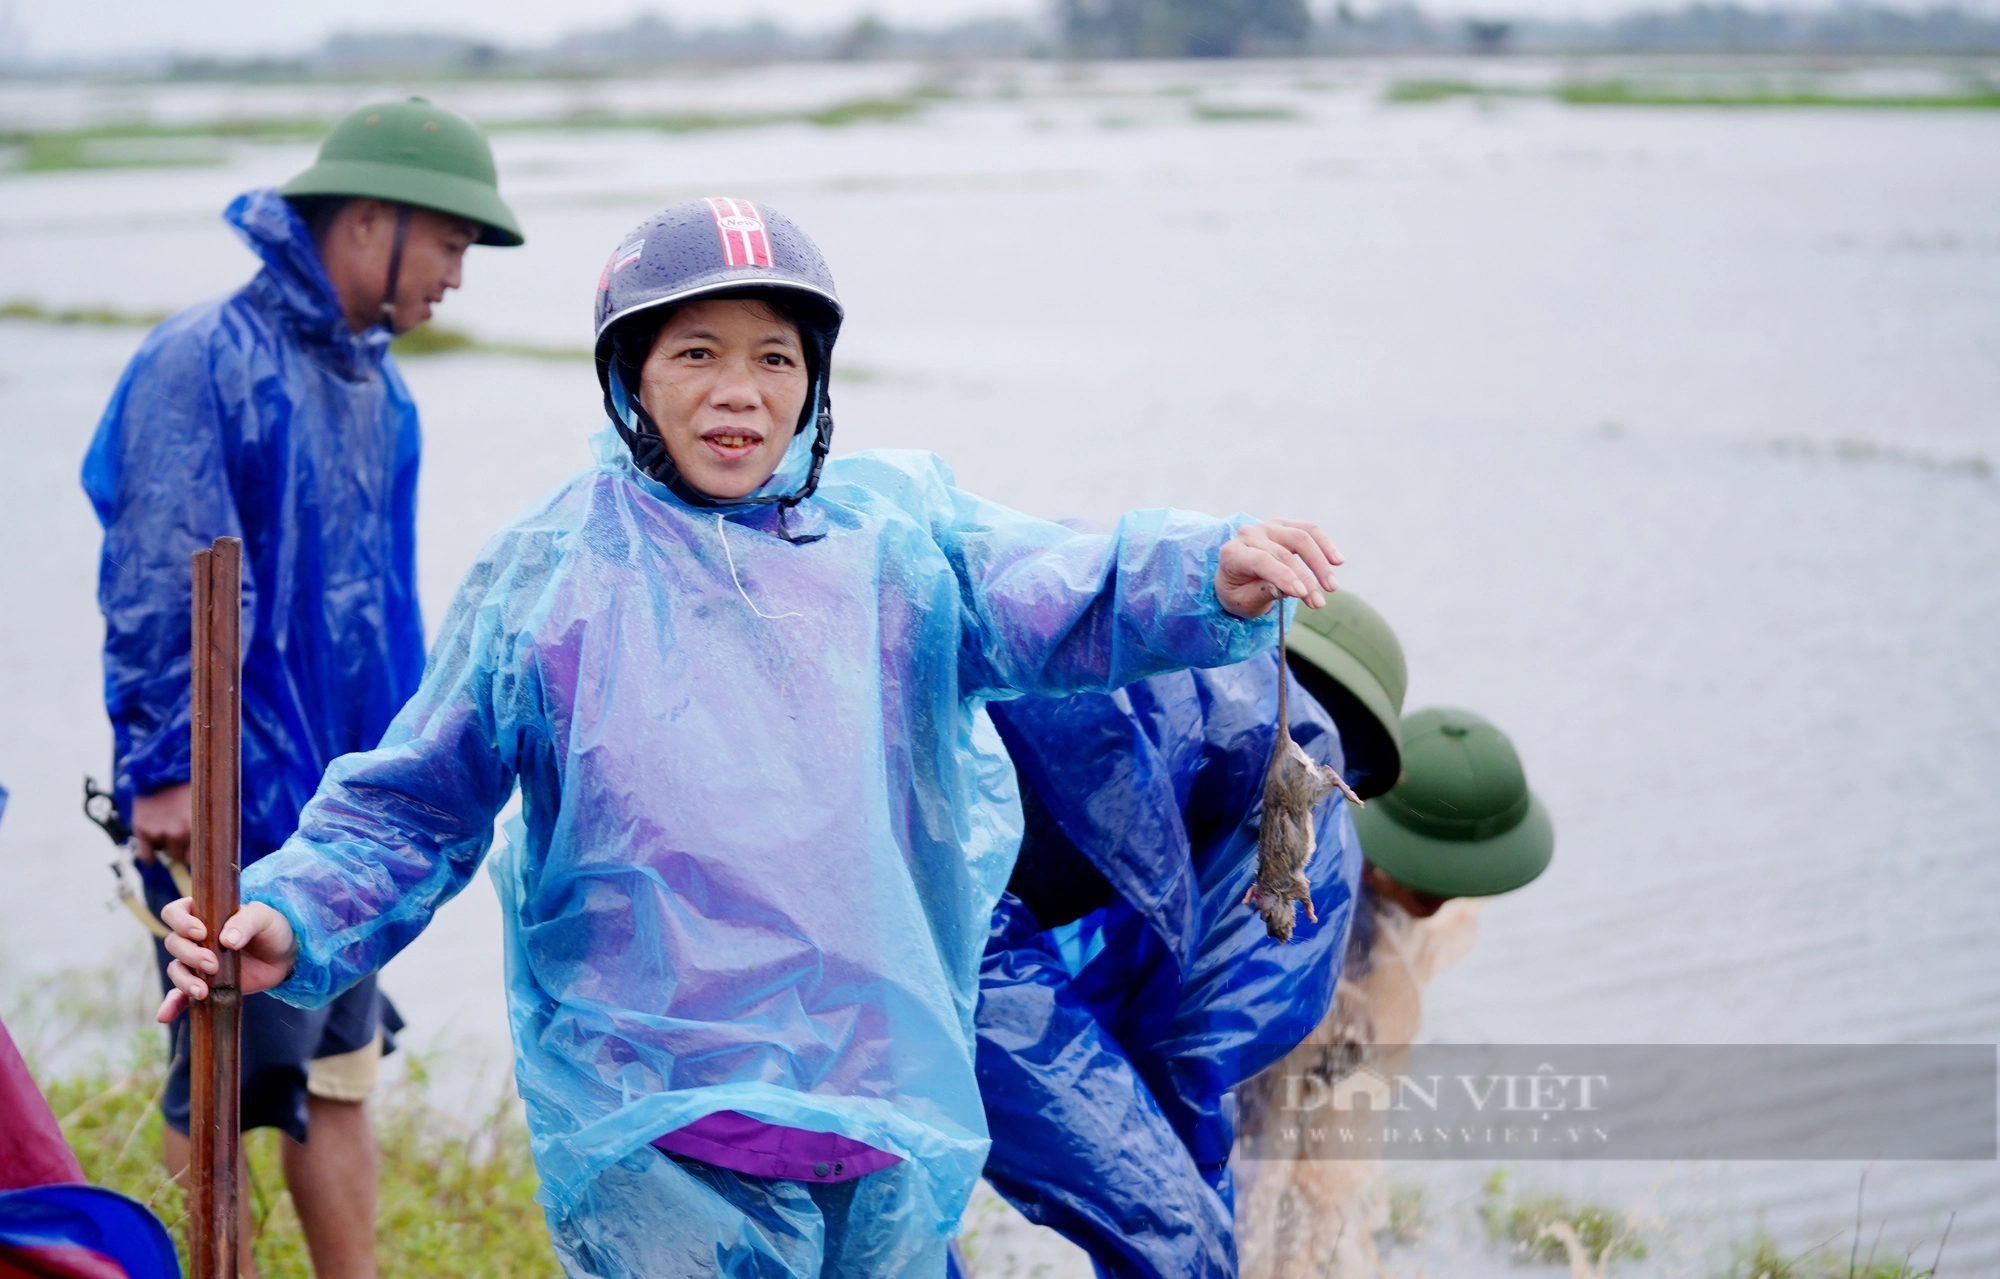 Cả làng ở Hà Tĩnh “đội mưa” cùng nhau lội nước đi bắt chuột bảo vệ mùa màng - Ảnh 10.